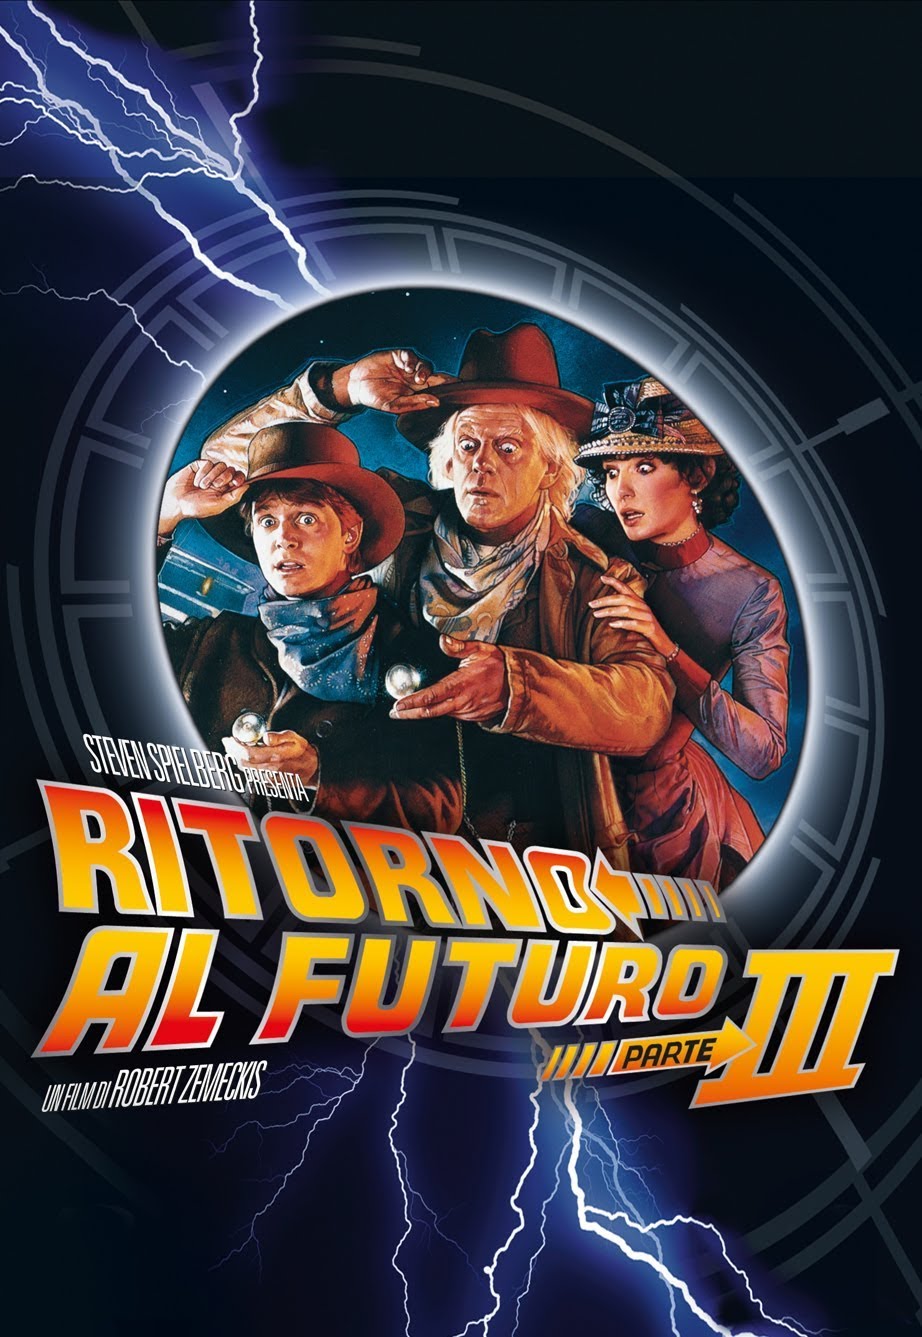 Ritorno al futuro – Parte III [HD] (1990)